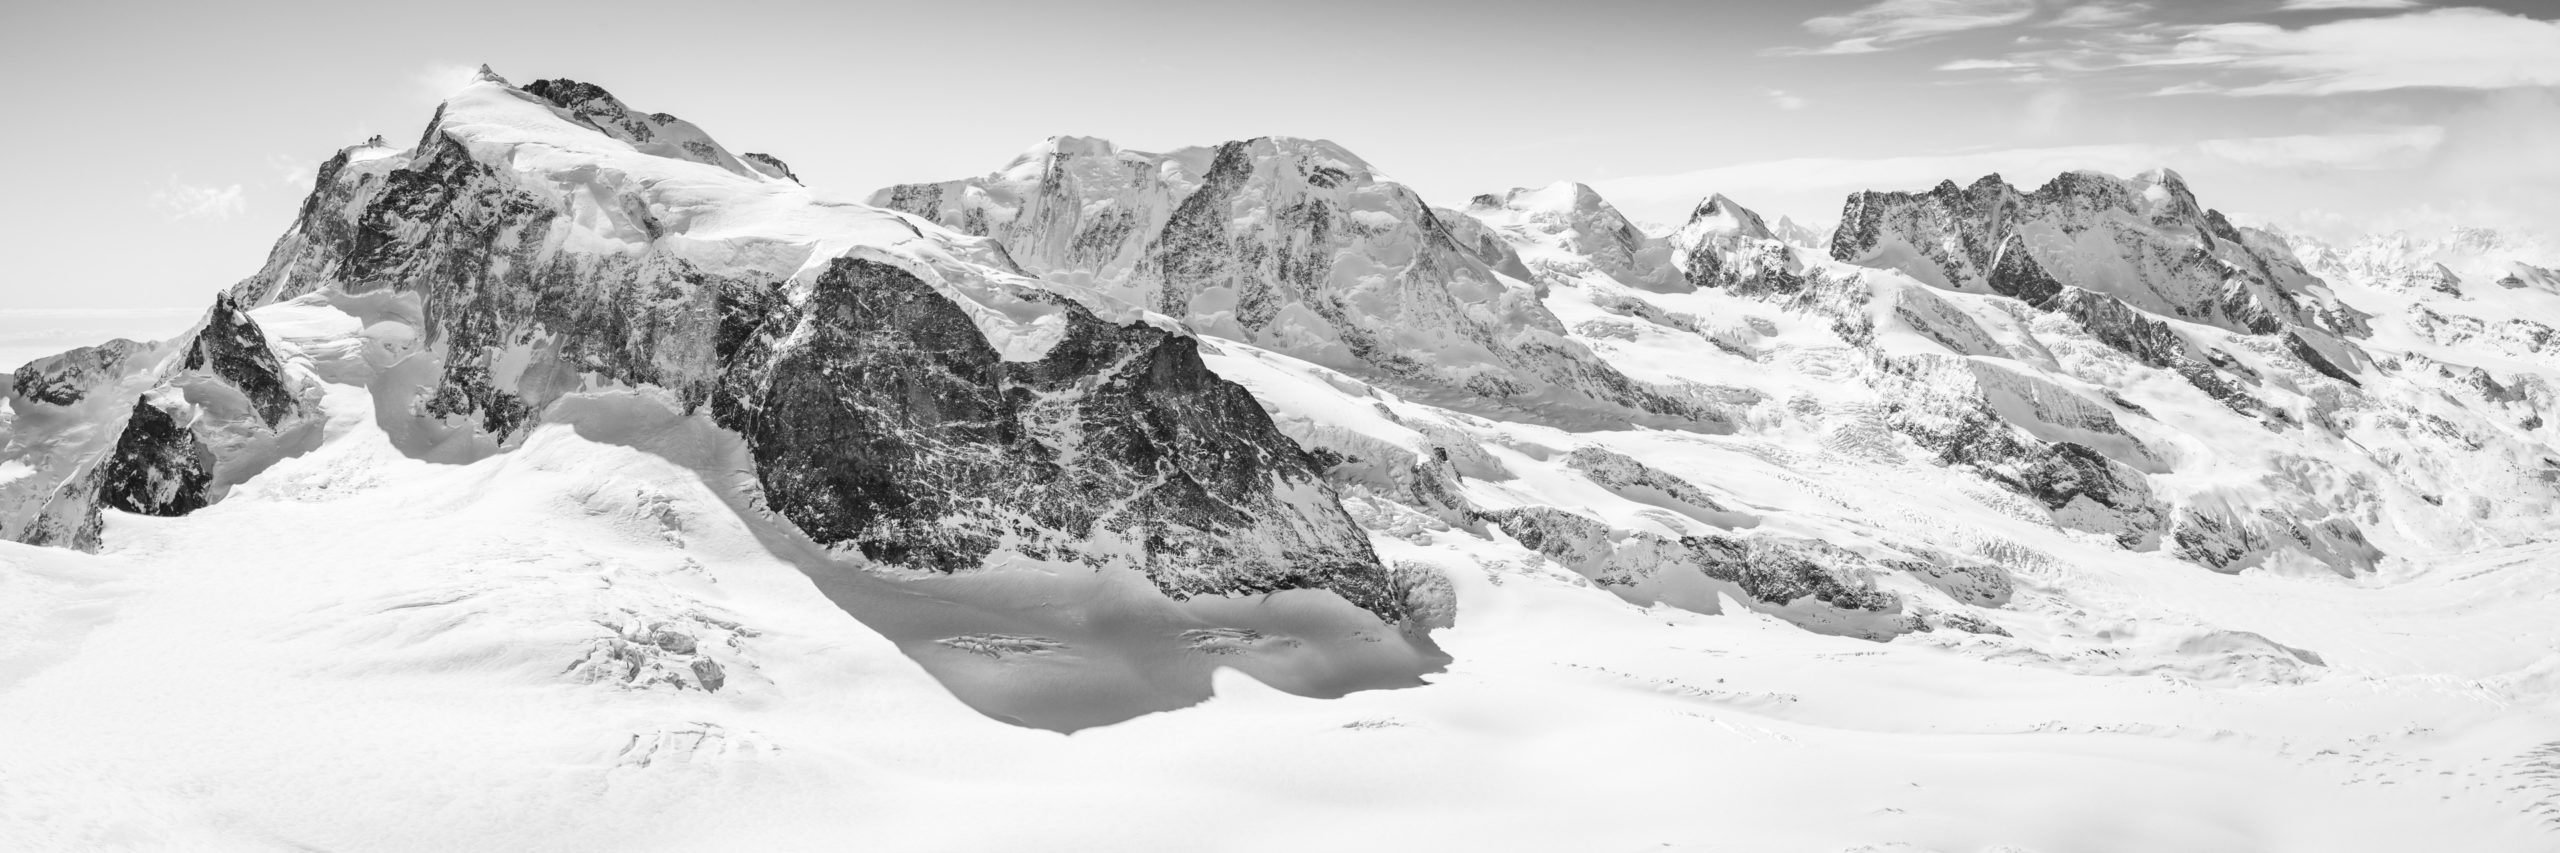 Zermatt Monte rosa panorama - tirage photo et encadrement des sommets des Alpes Suisses - Breithorn - Lyskamm, Castor et Pollux